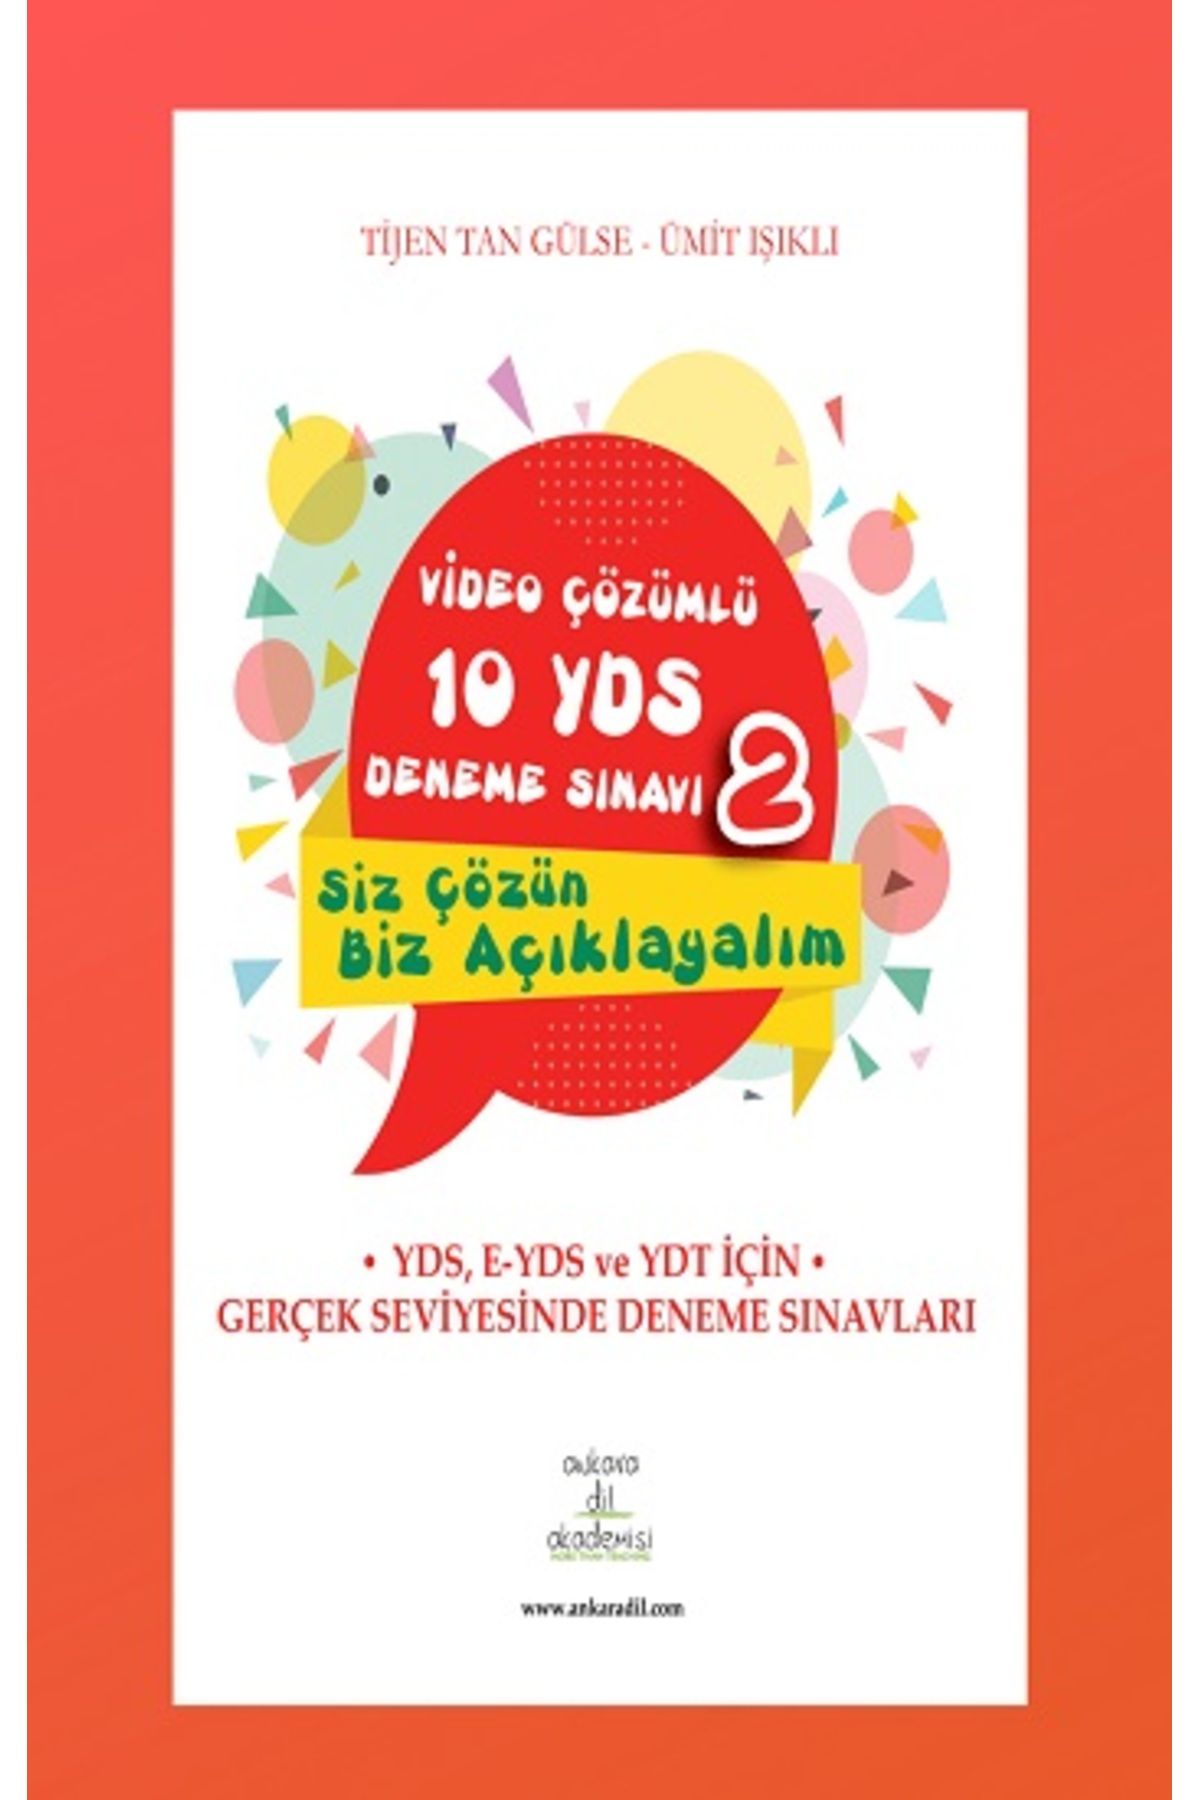 Ankara Dil Akademisi Video Çözümlü 10 Yds Deneme Sınavı - 2